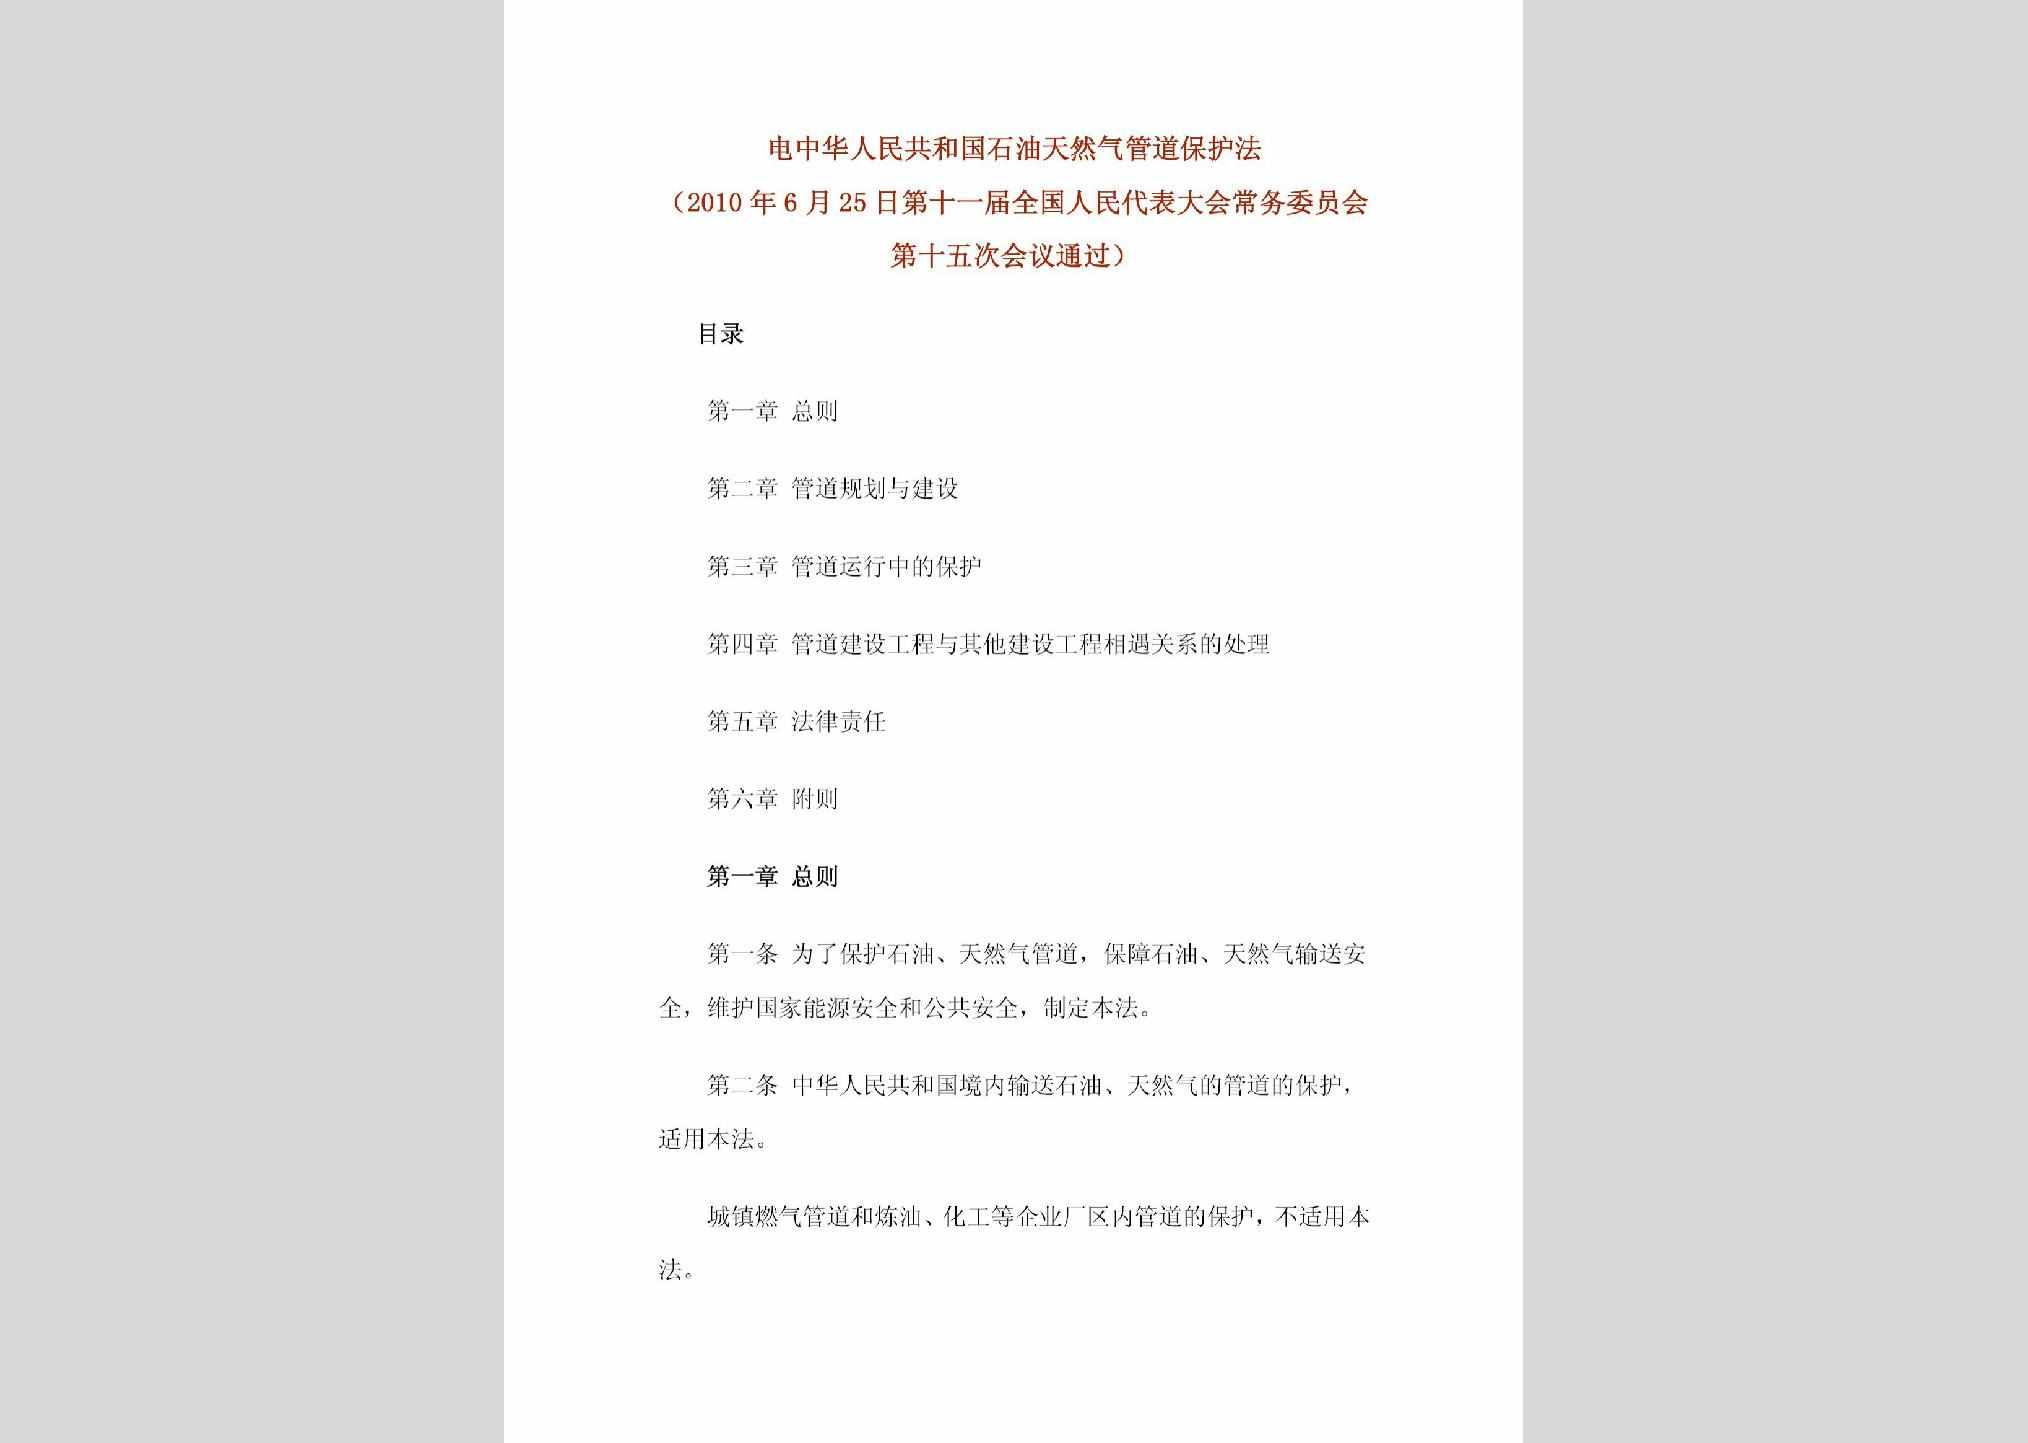 中华人民共和国主席令[2010]30号：中华人民共和国石油天然气管道保护法